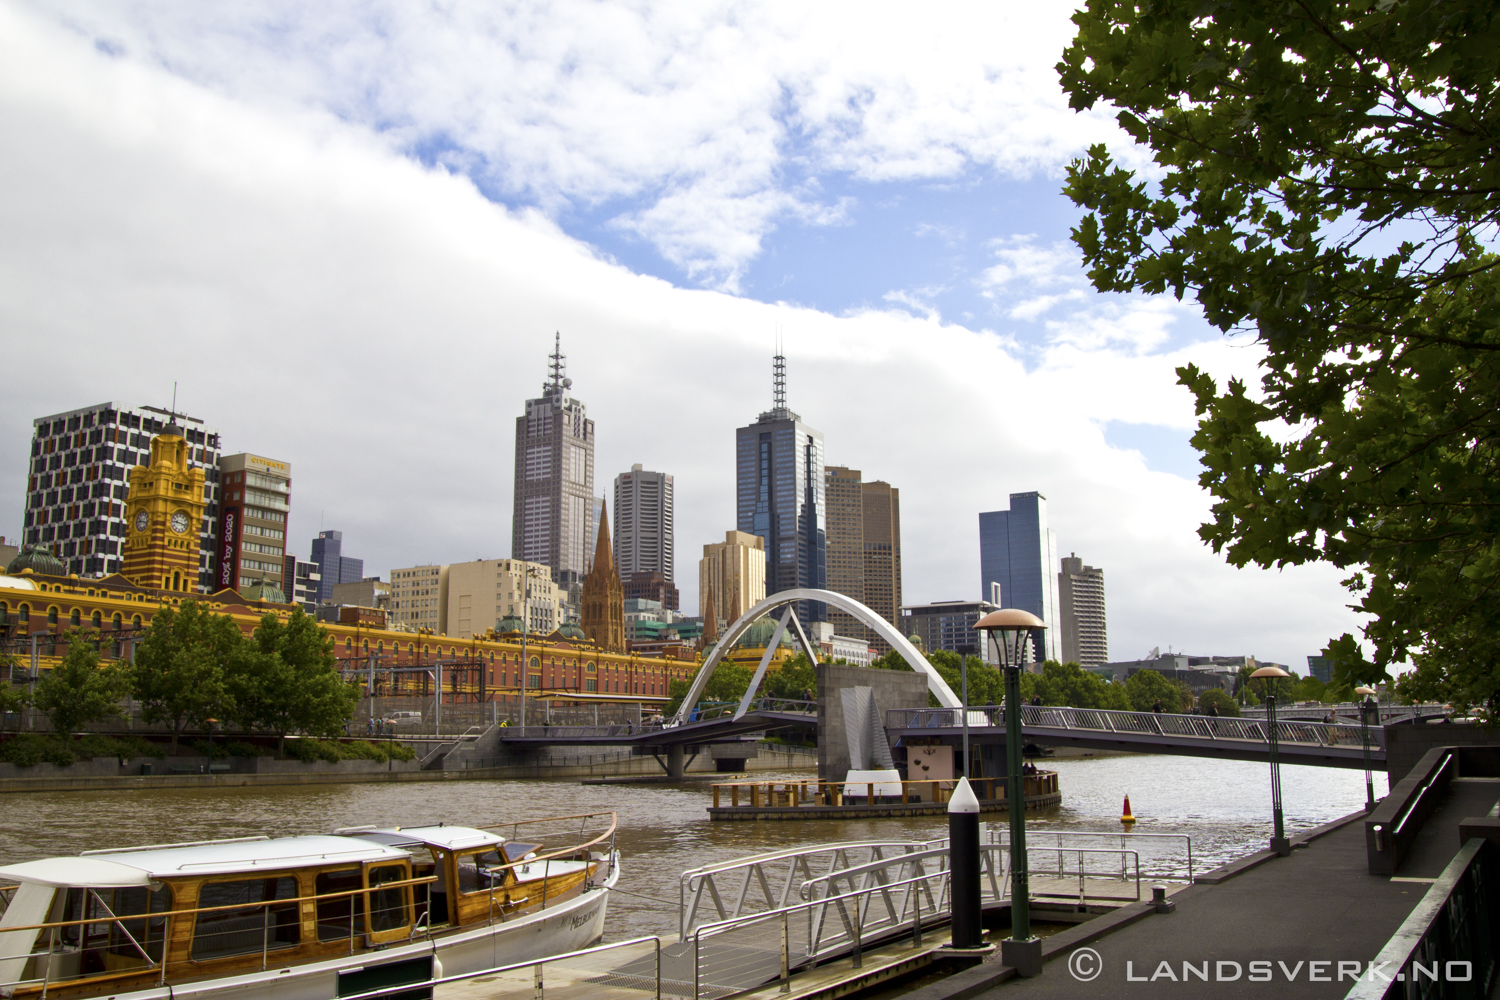 Melbourne, Victoria. 

(Canon EOS 550D / Sigma 18-50mm F2.8)